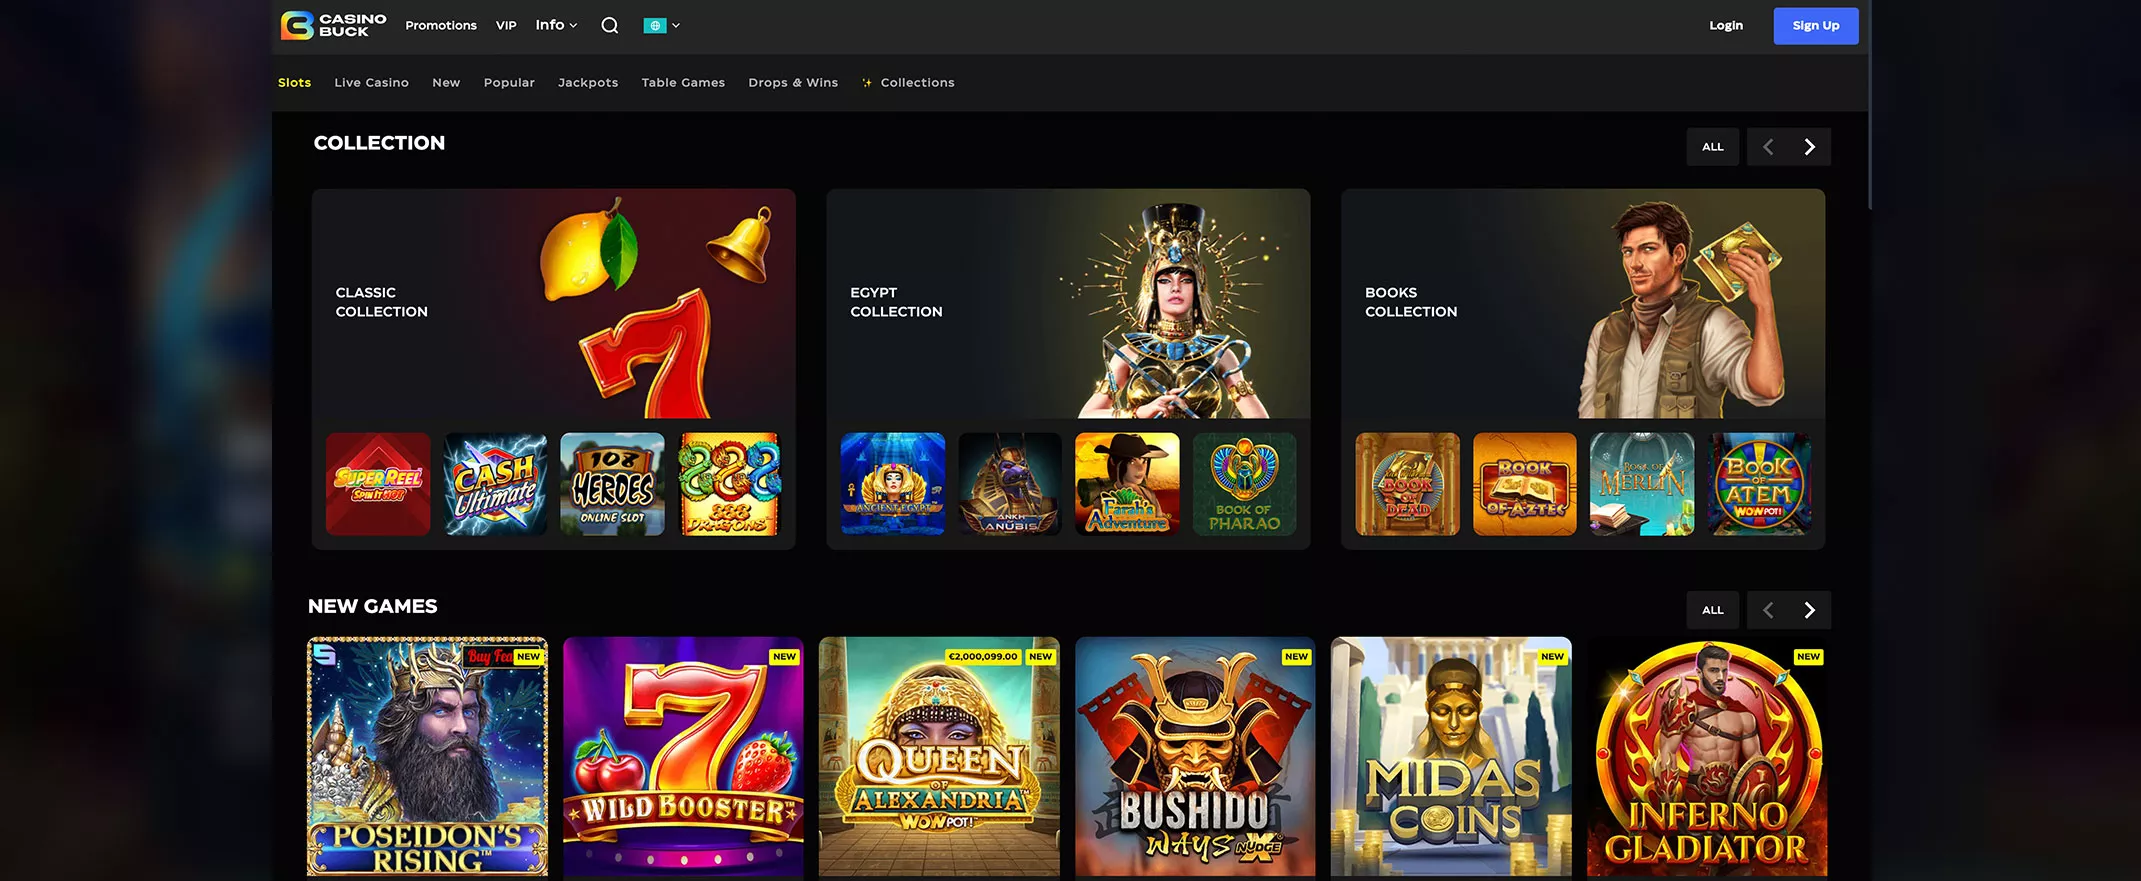 CasinoBuck screenshot of the games